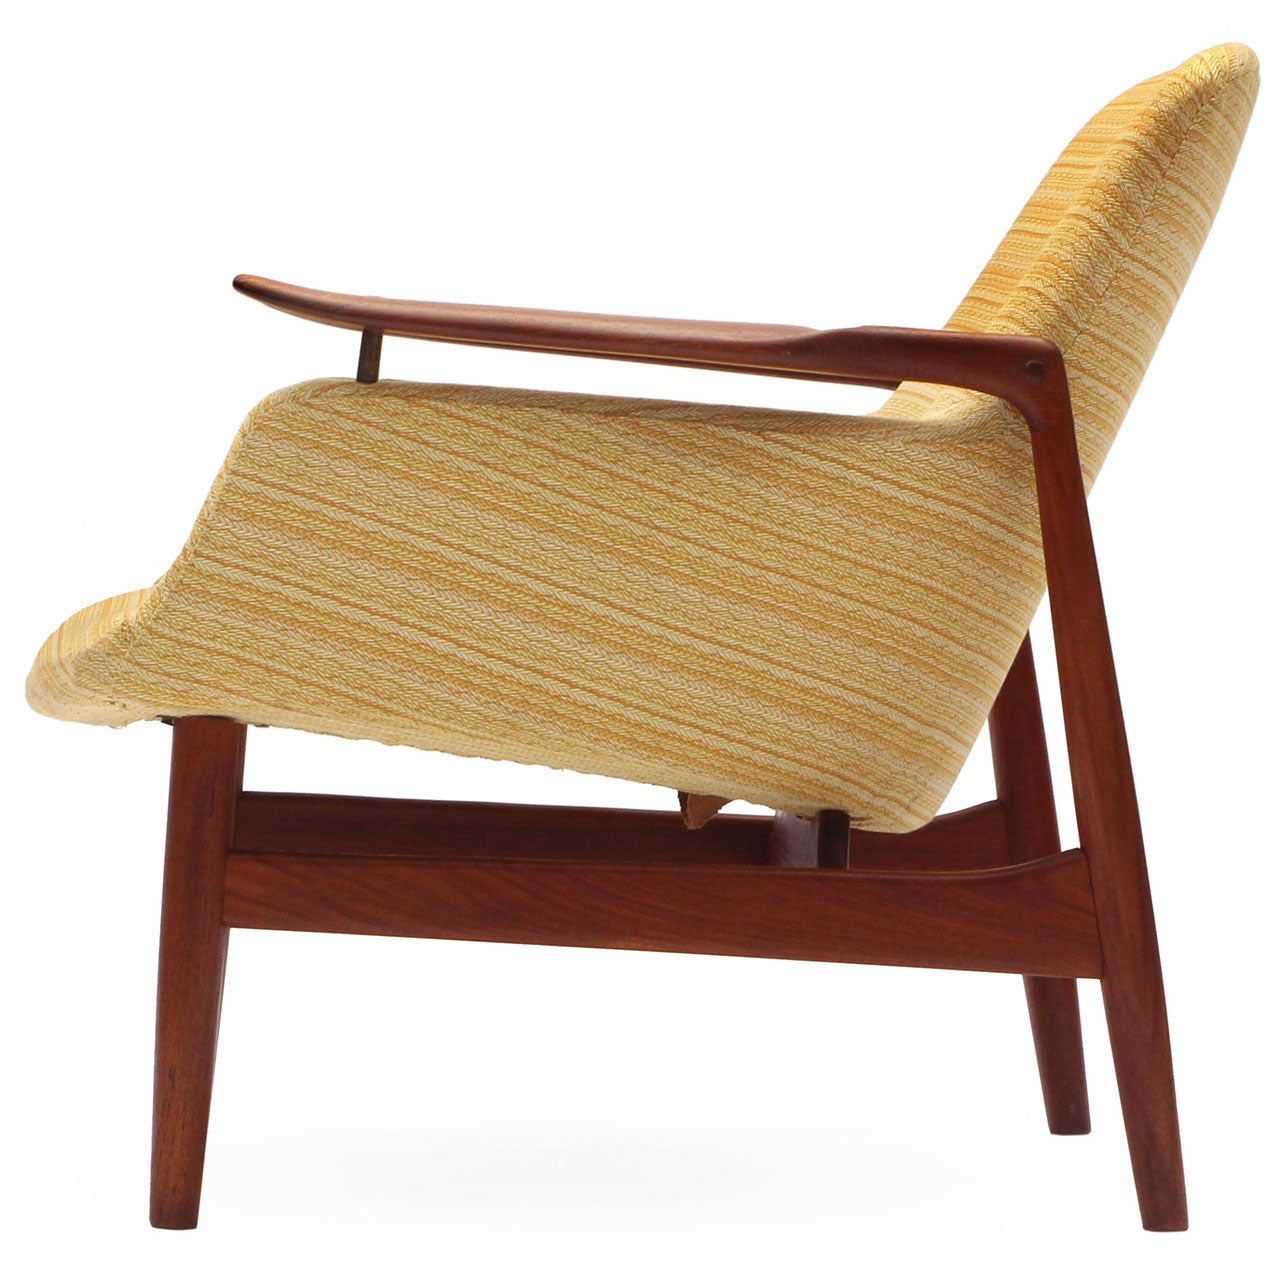 NV-53 Lounge Chair by Finn Juhl